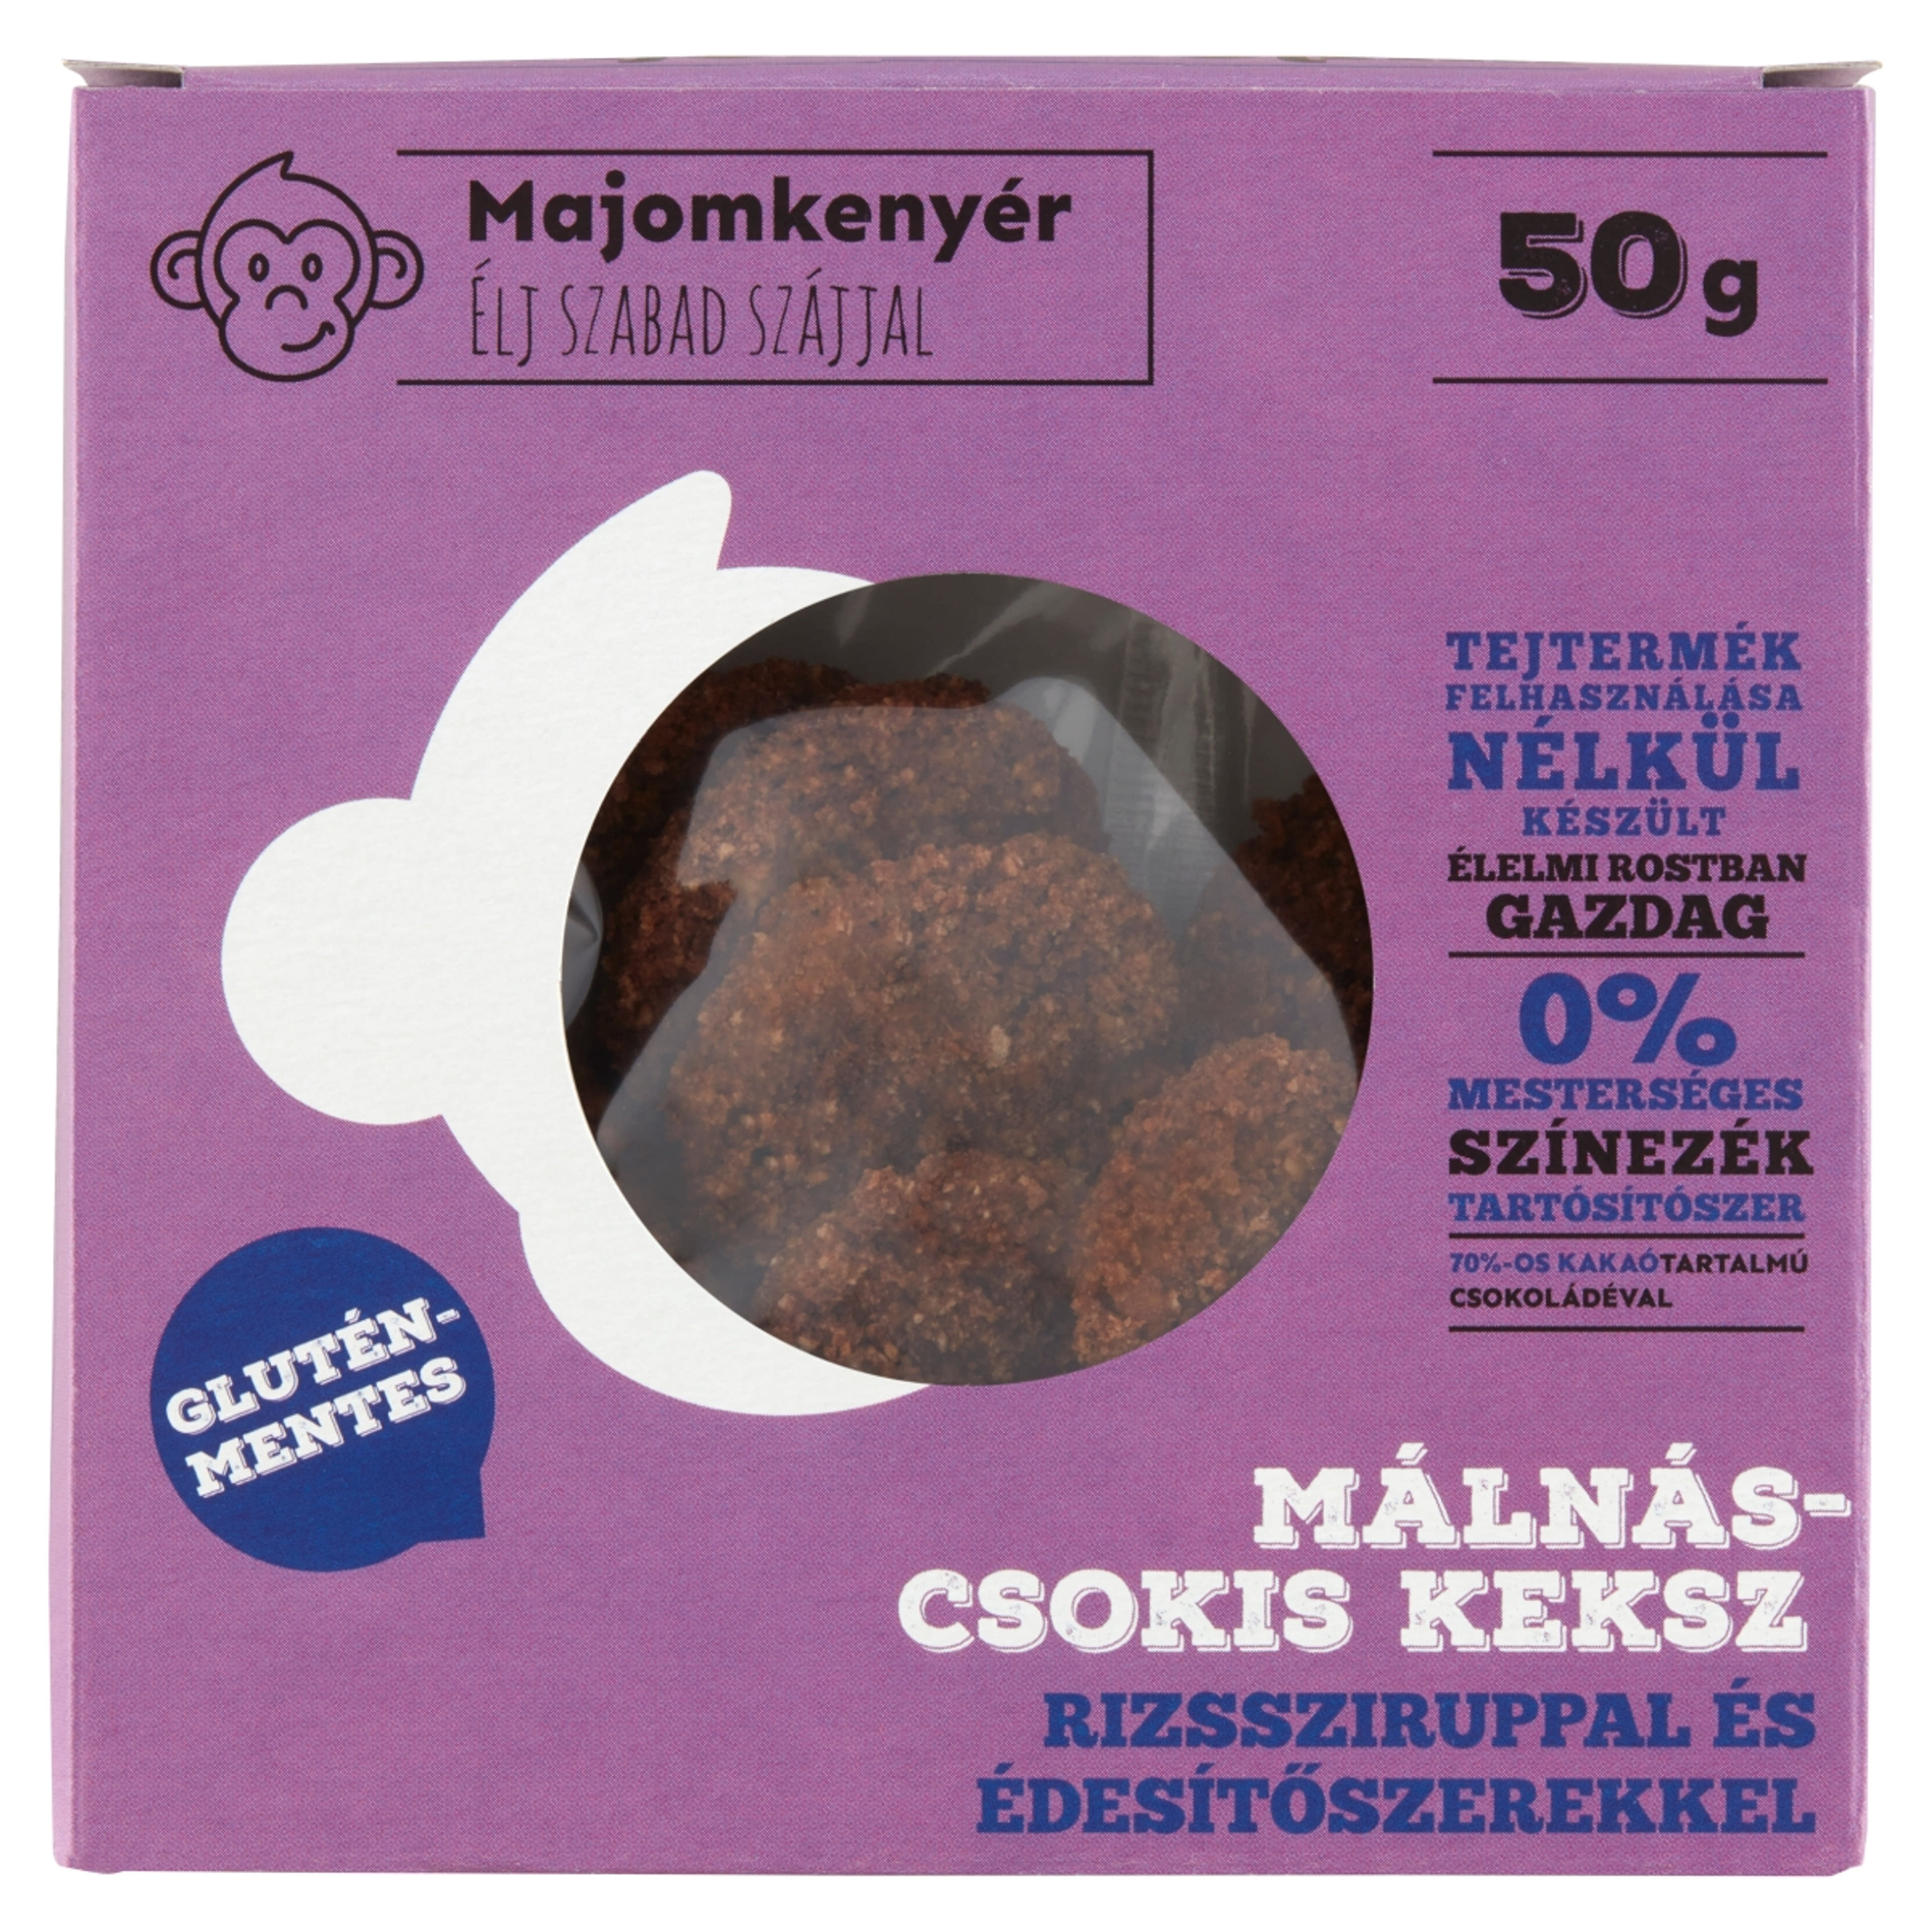 Majomkenyér Gluténmentes Málnás-Csokis keksz - 50 g-1